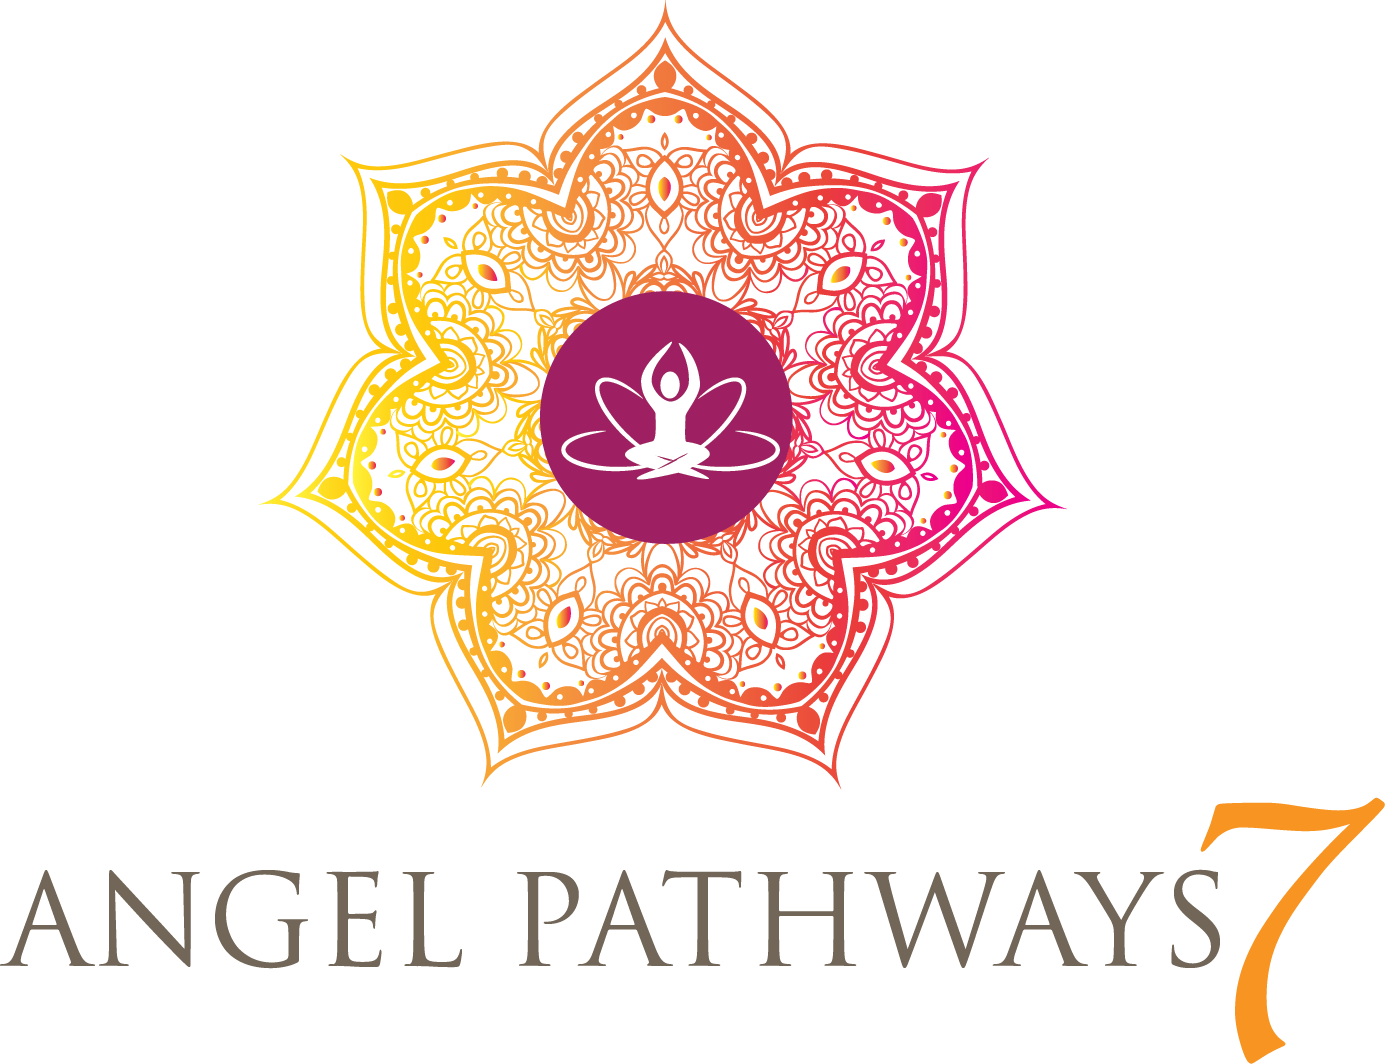 Angel Pathways 7